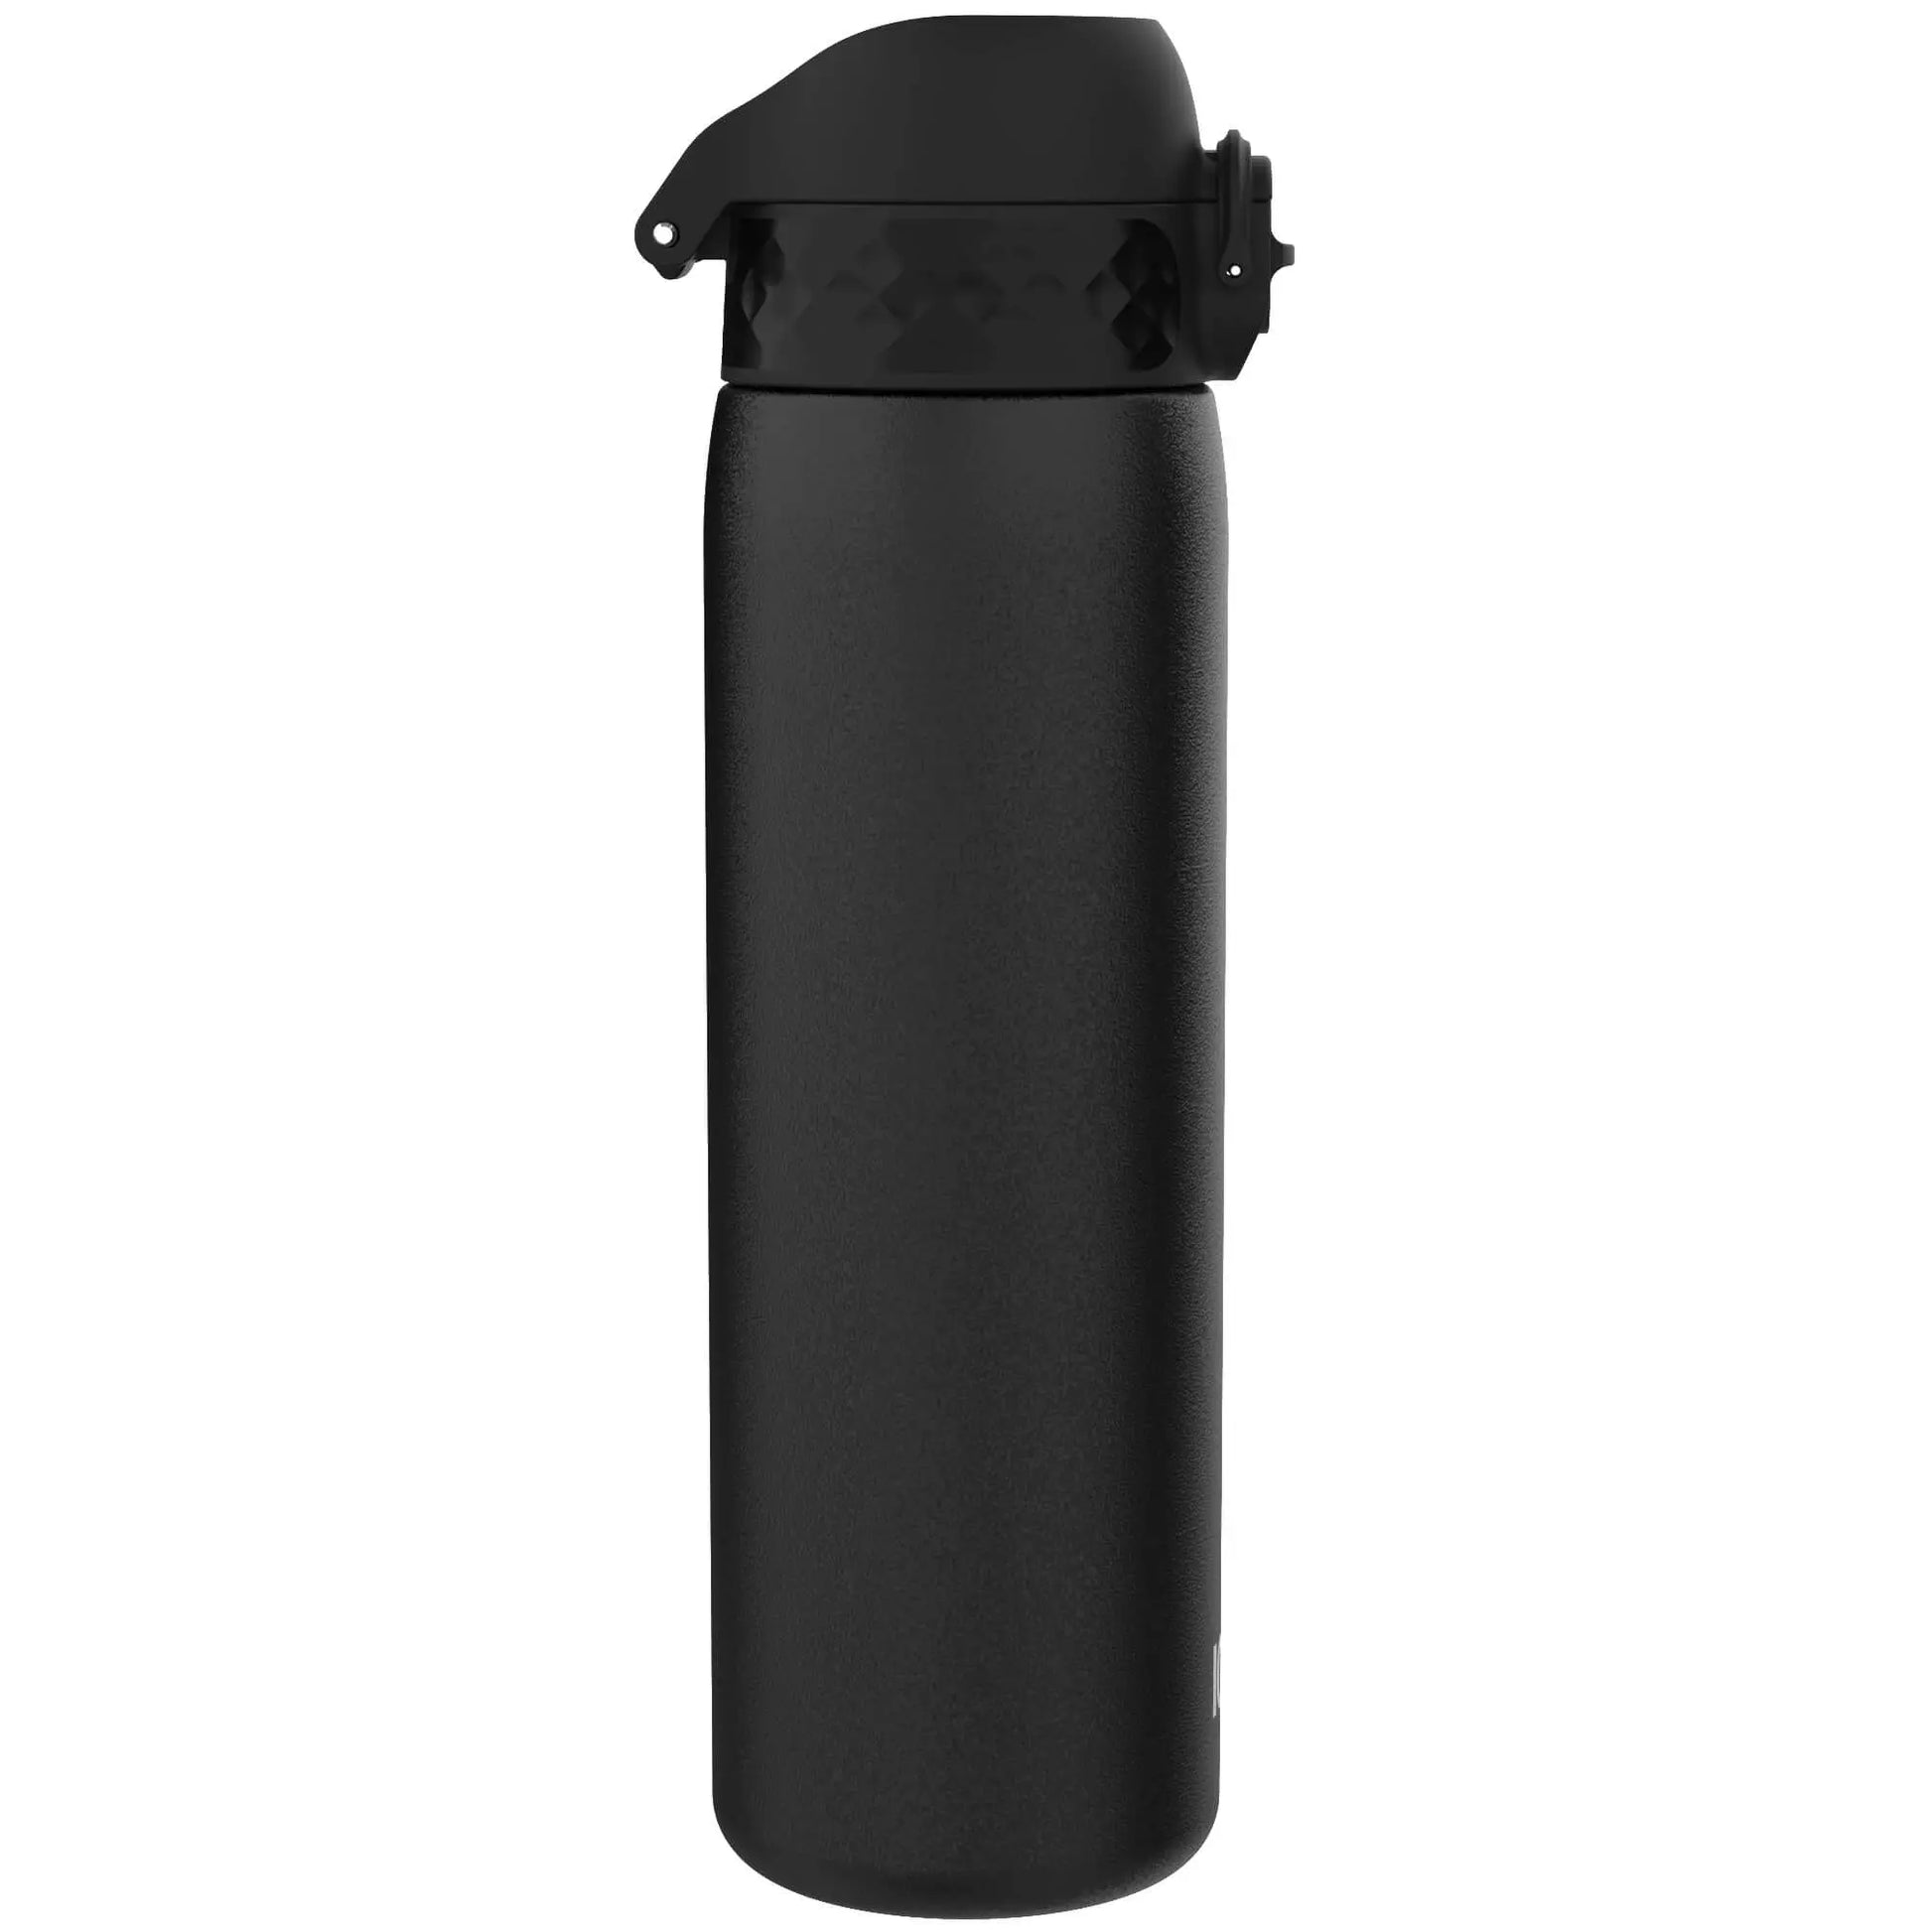 Leak Proof Slim Water Bottle, Stainless Steel, Black, 600ml (20oz) - ION8